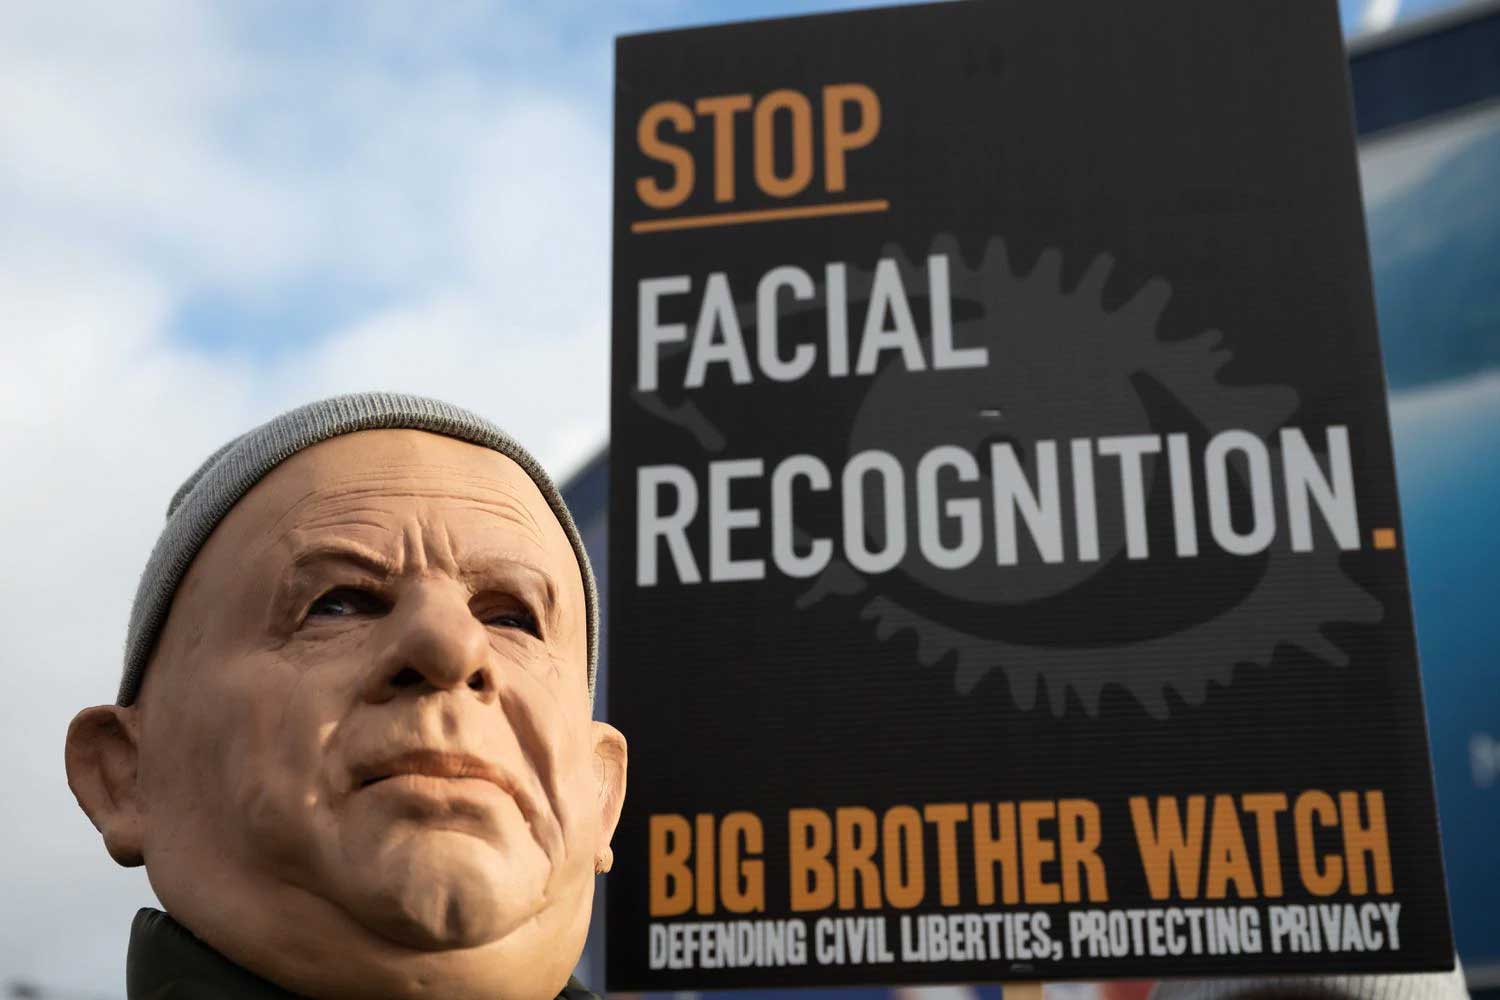 Un homme masqué lors d'une manifestation en janvier à Cardiff contre l'utilisation de caméras de reconnaissance faciale par la police.